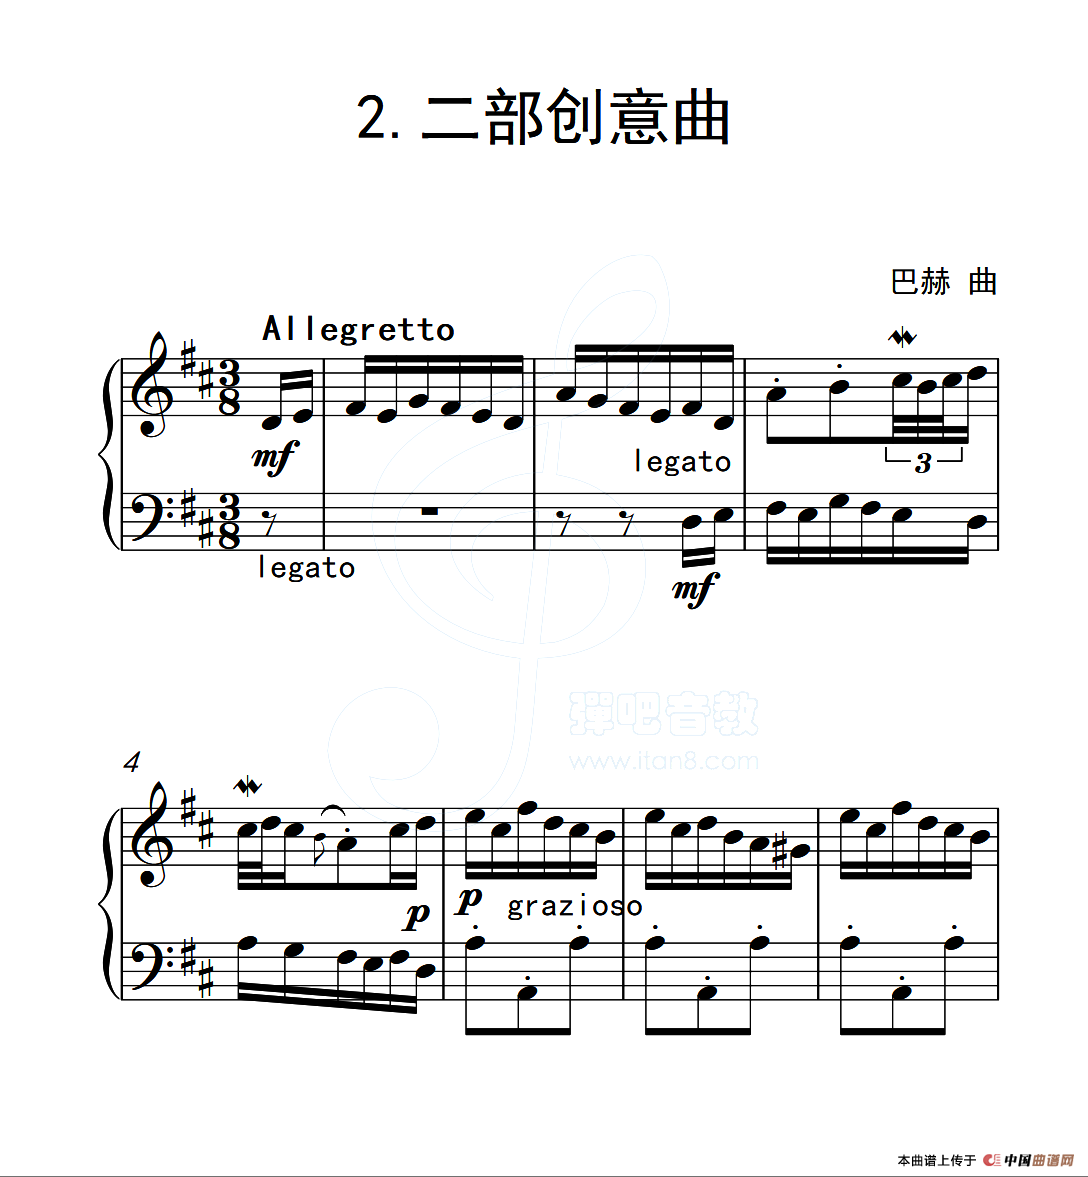 五级钢琴曲考级曲目(五级钢琴考级曲目新版)